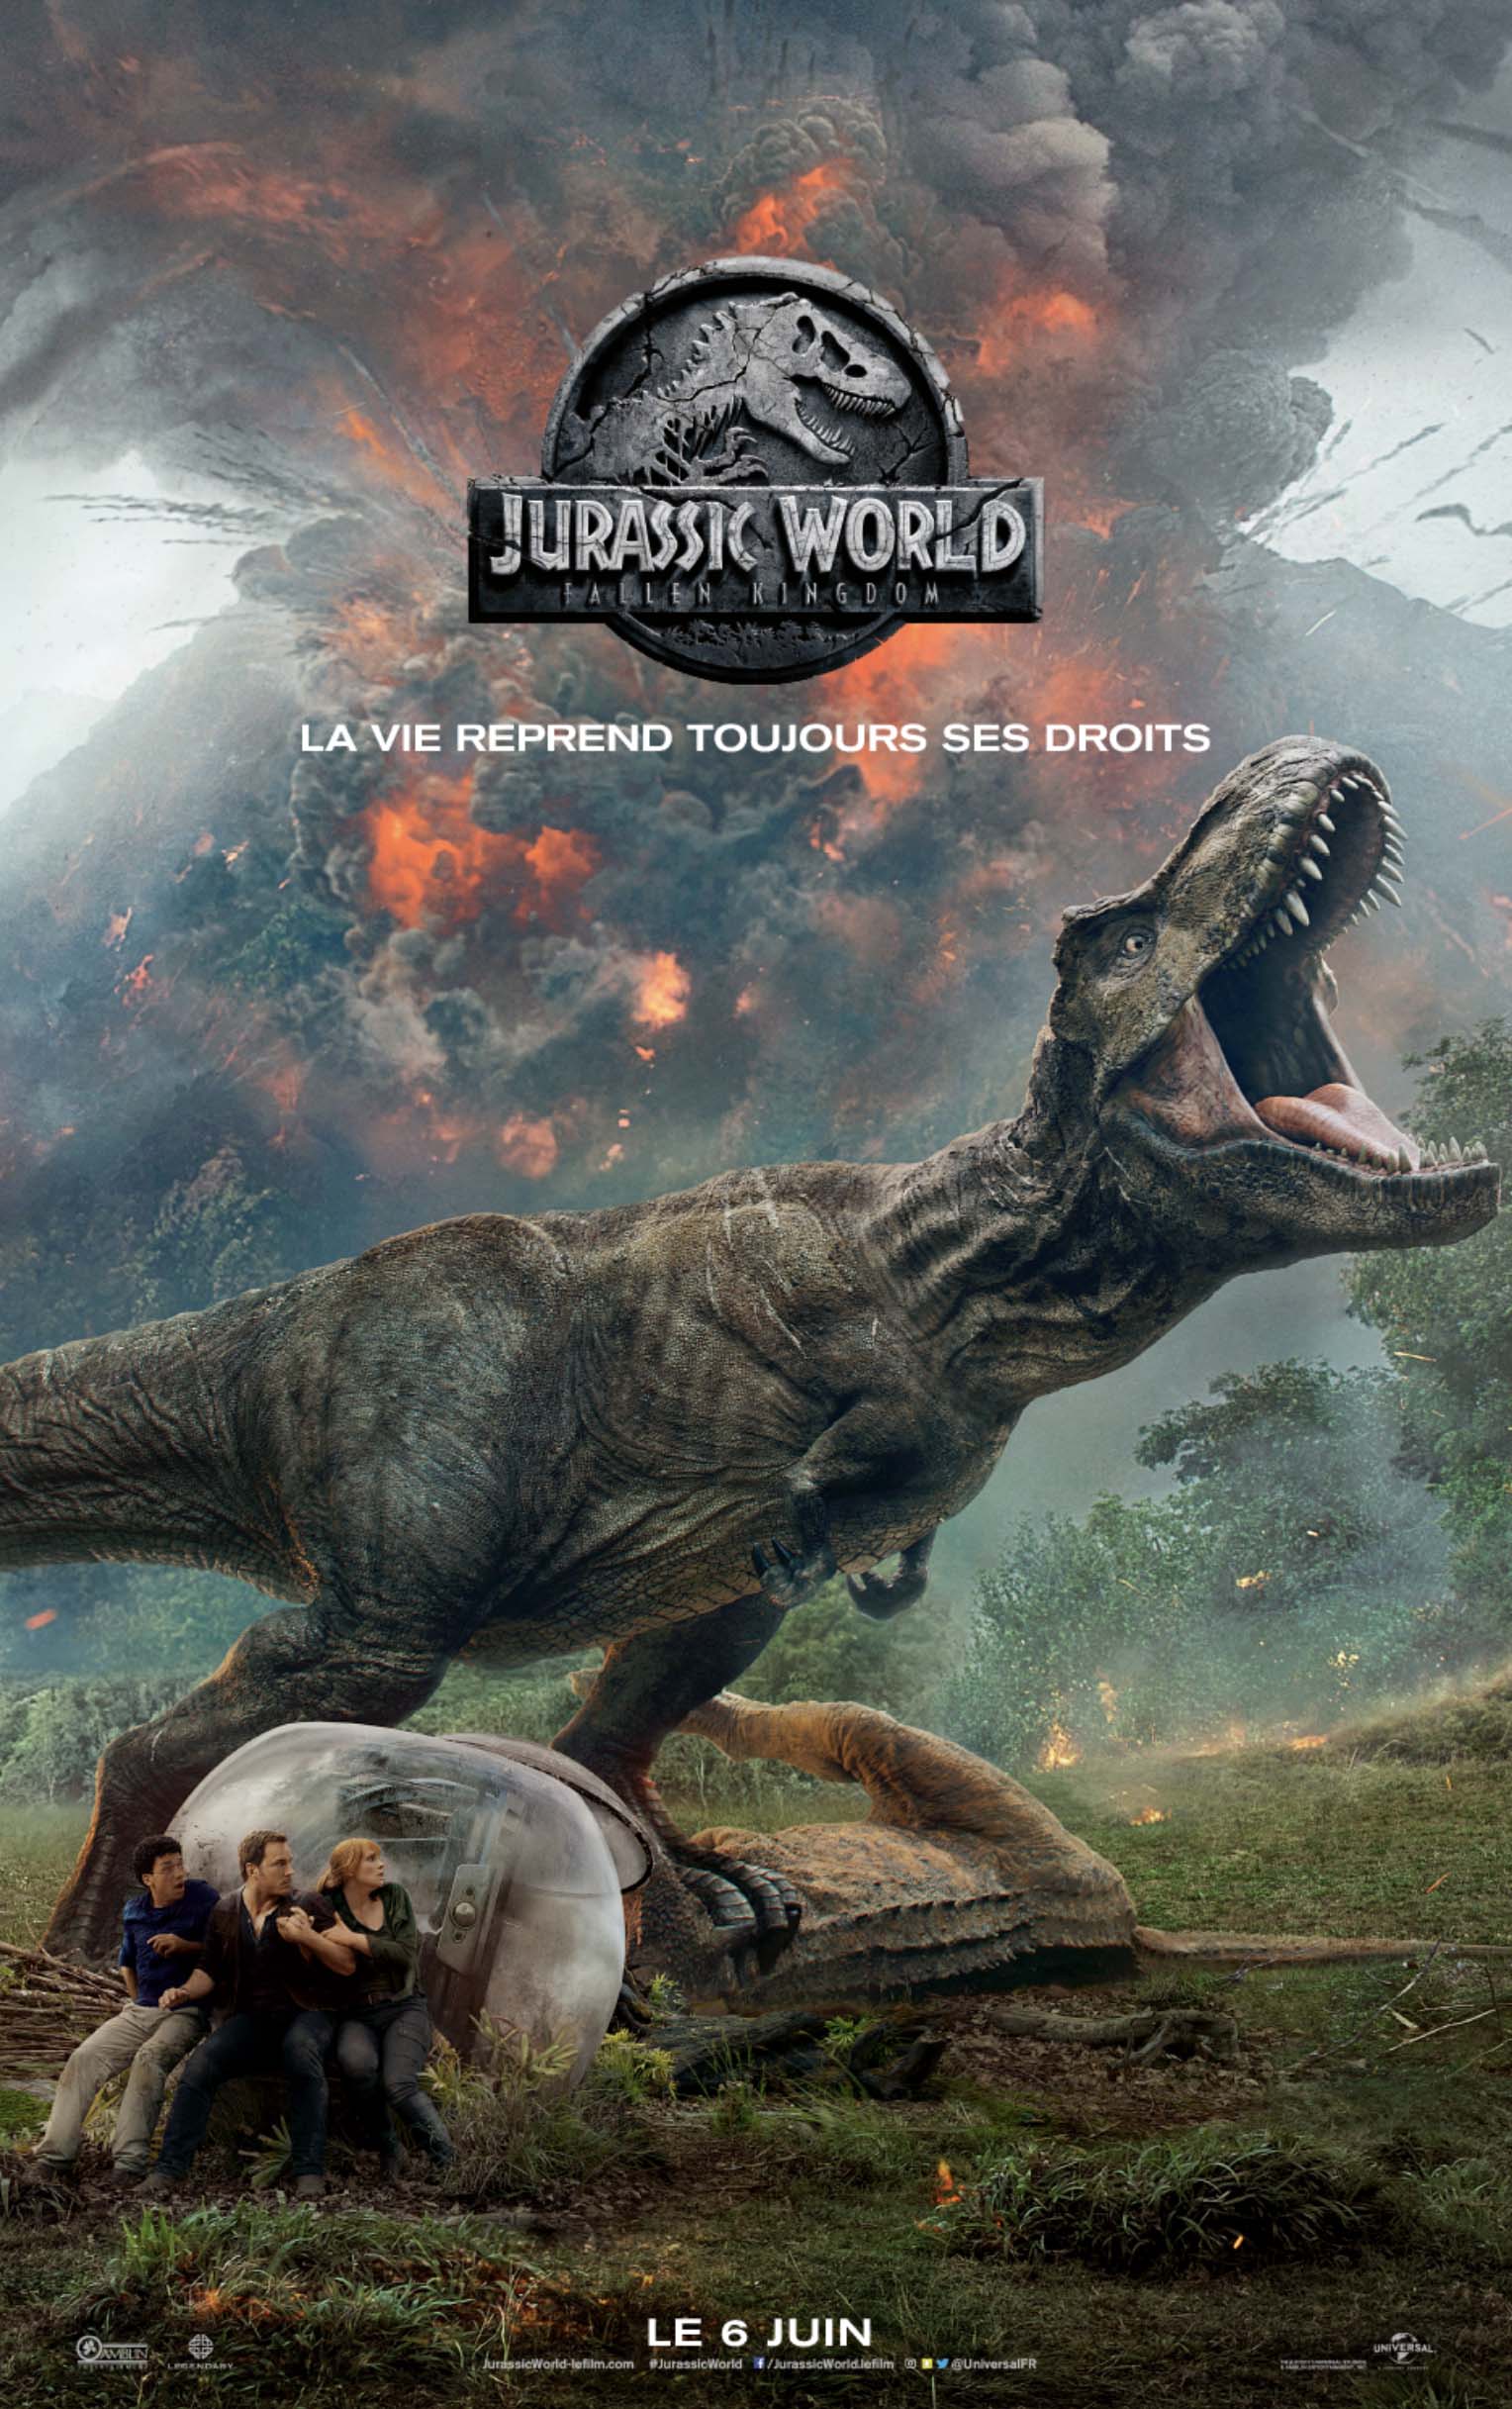 Affiche française pour le film Jurassic World: Fallen Kingdom réalisé par J.A. Bayona avec Chris Pratt, Bryce Dallas Howard et Justice Smith